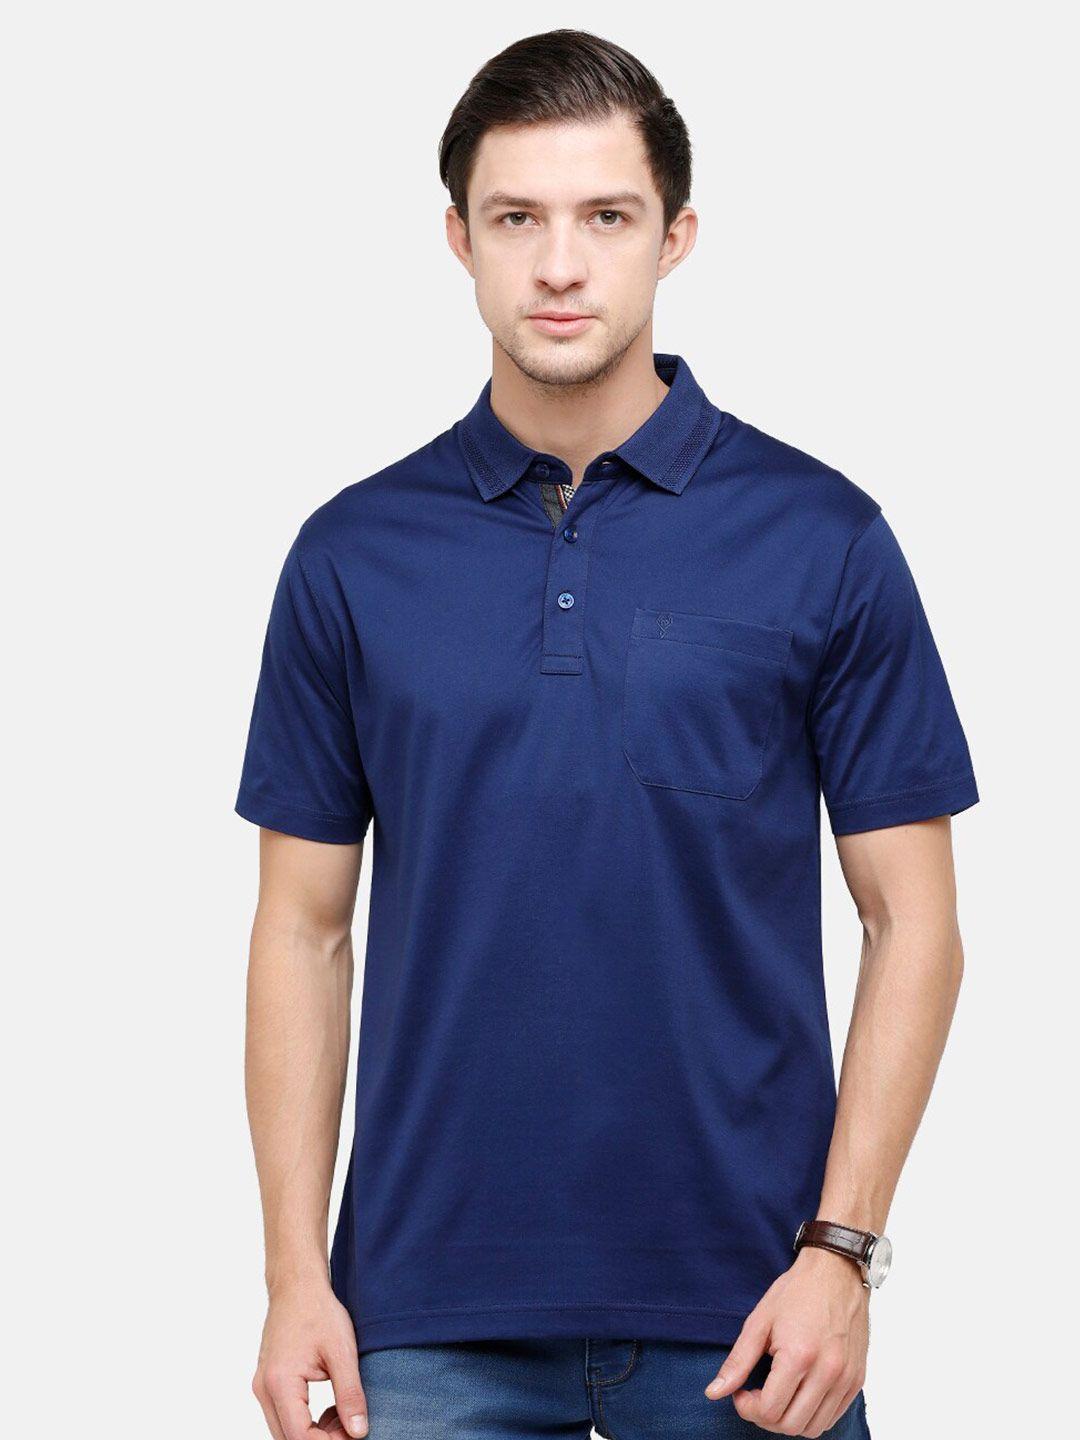 classic polo men navy blue polo collar t-shirt